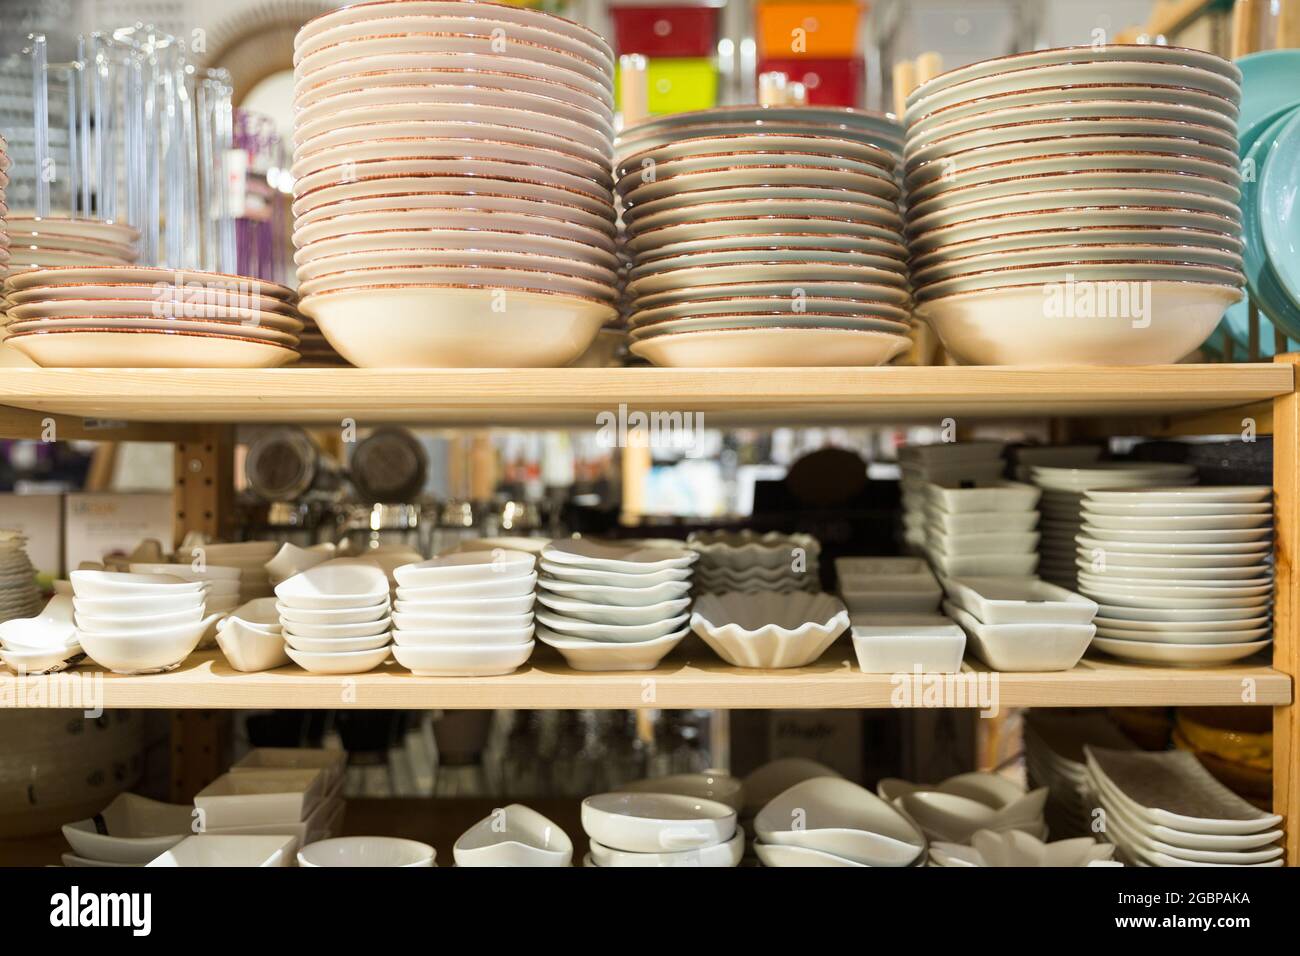 Plusieurs assiettes à vendre dans le rayon vaisselle du magasin Photo Stock  - Alamy